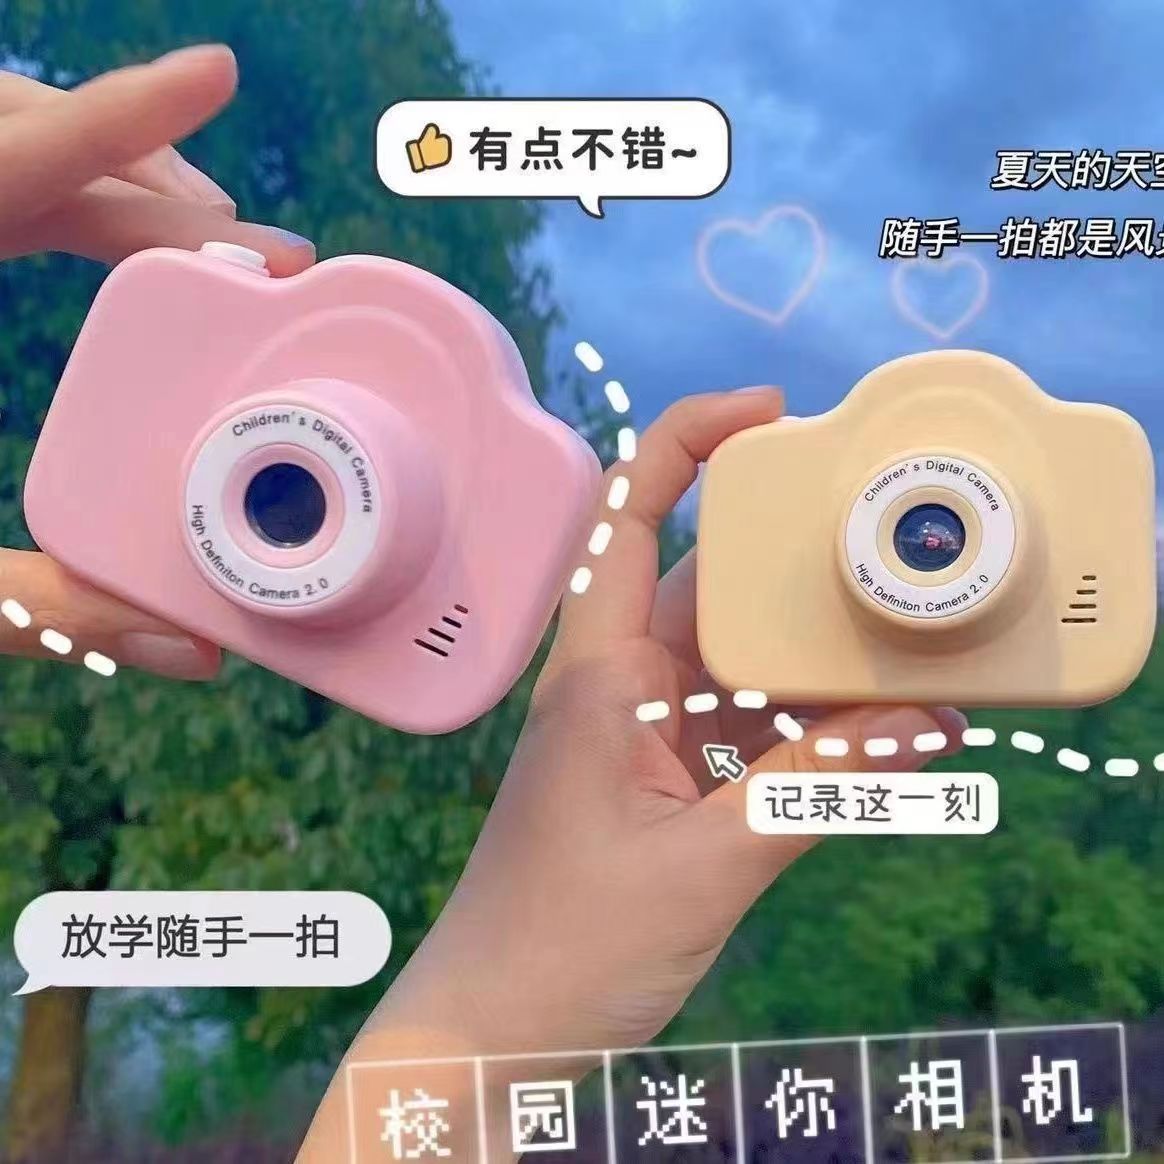 高清双摄相机可爱数码相机校园学生可拍照上传手机旅游记录摄像机